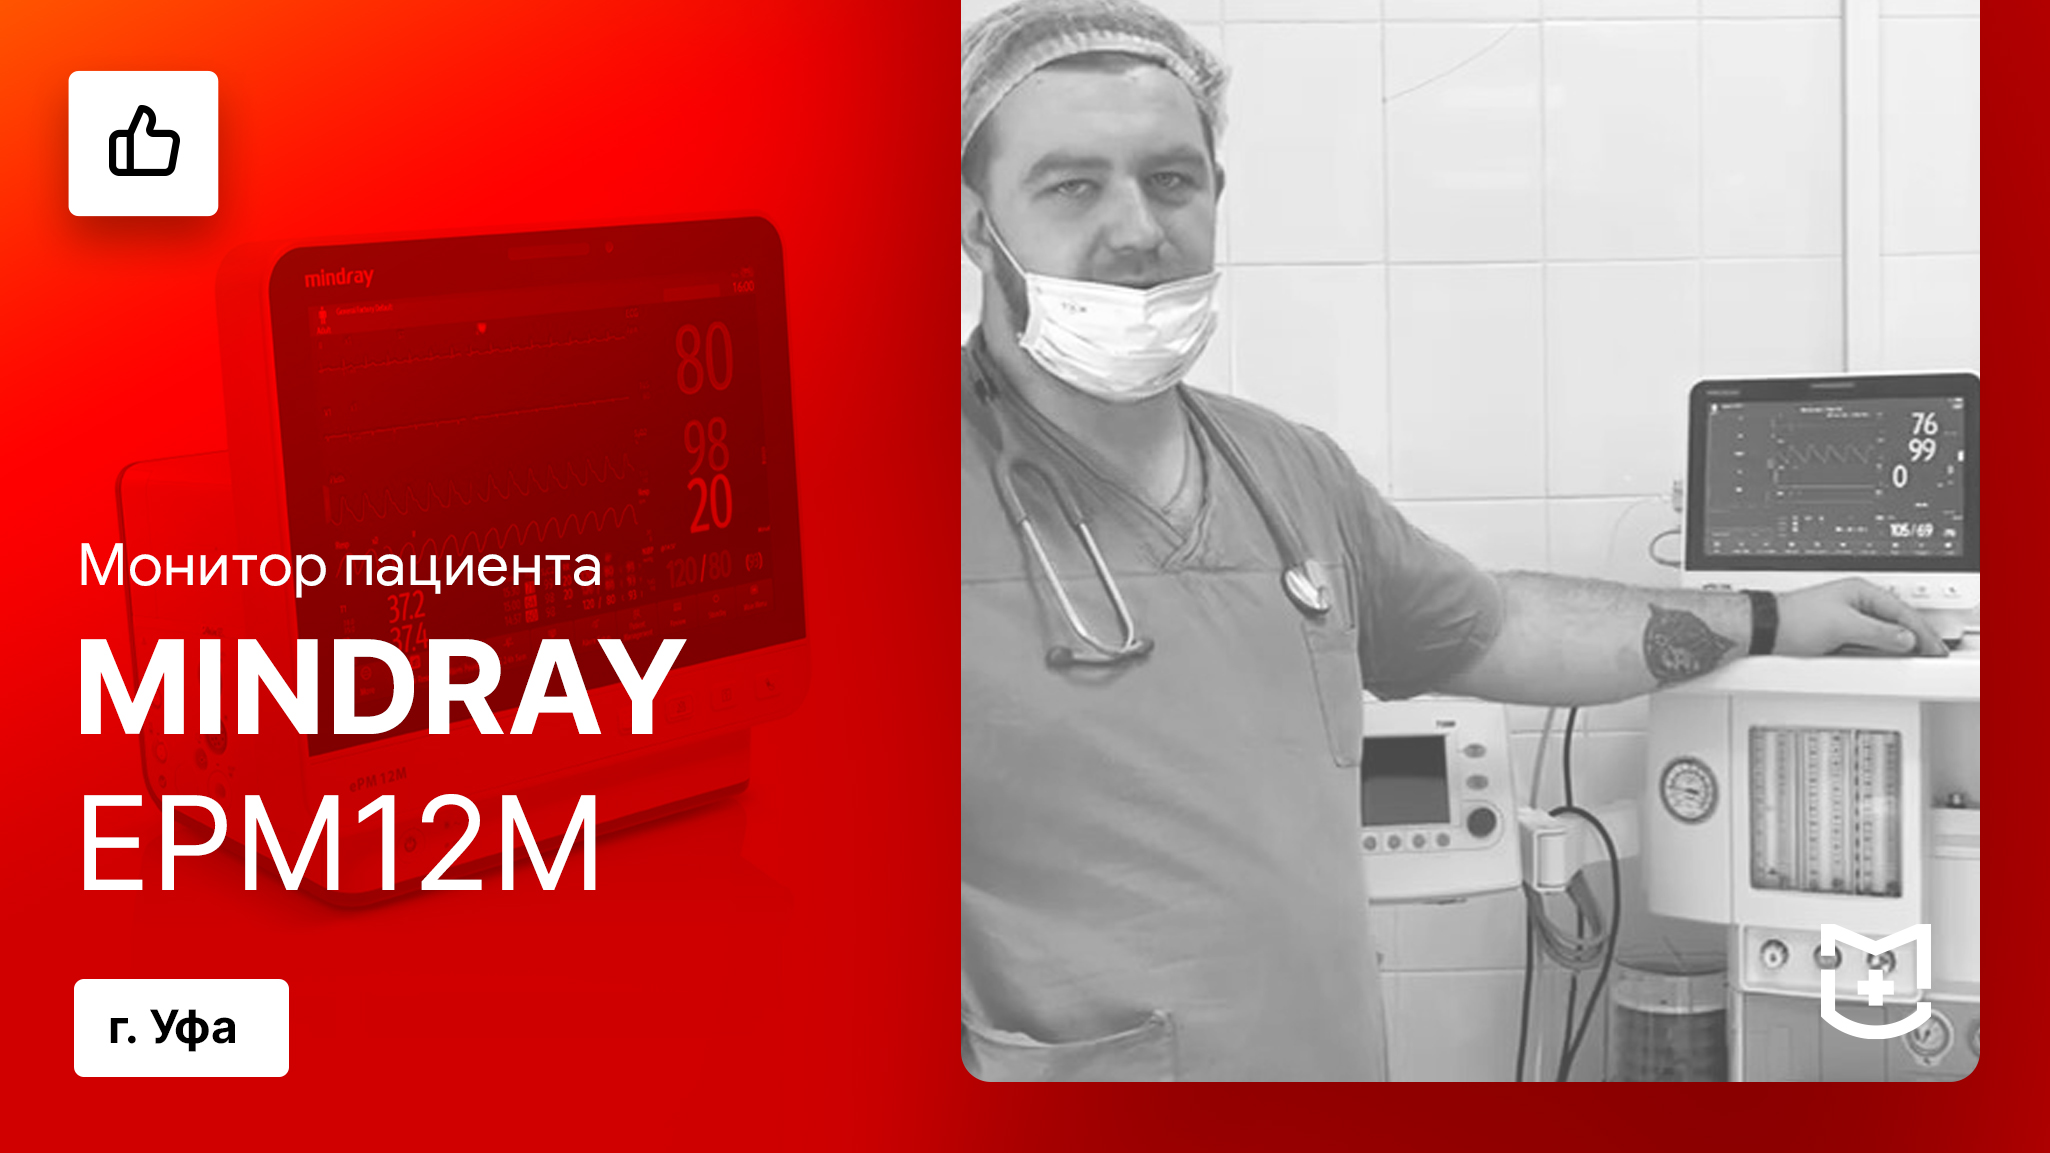 Отзыв на монитор пациента Mindray ePM12M и работу MEDLIGA